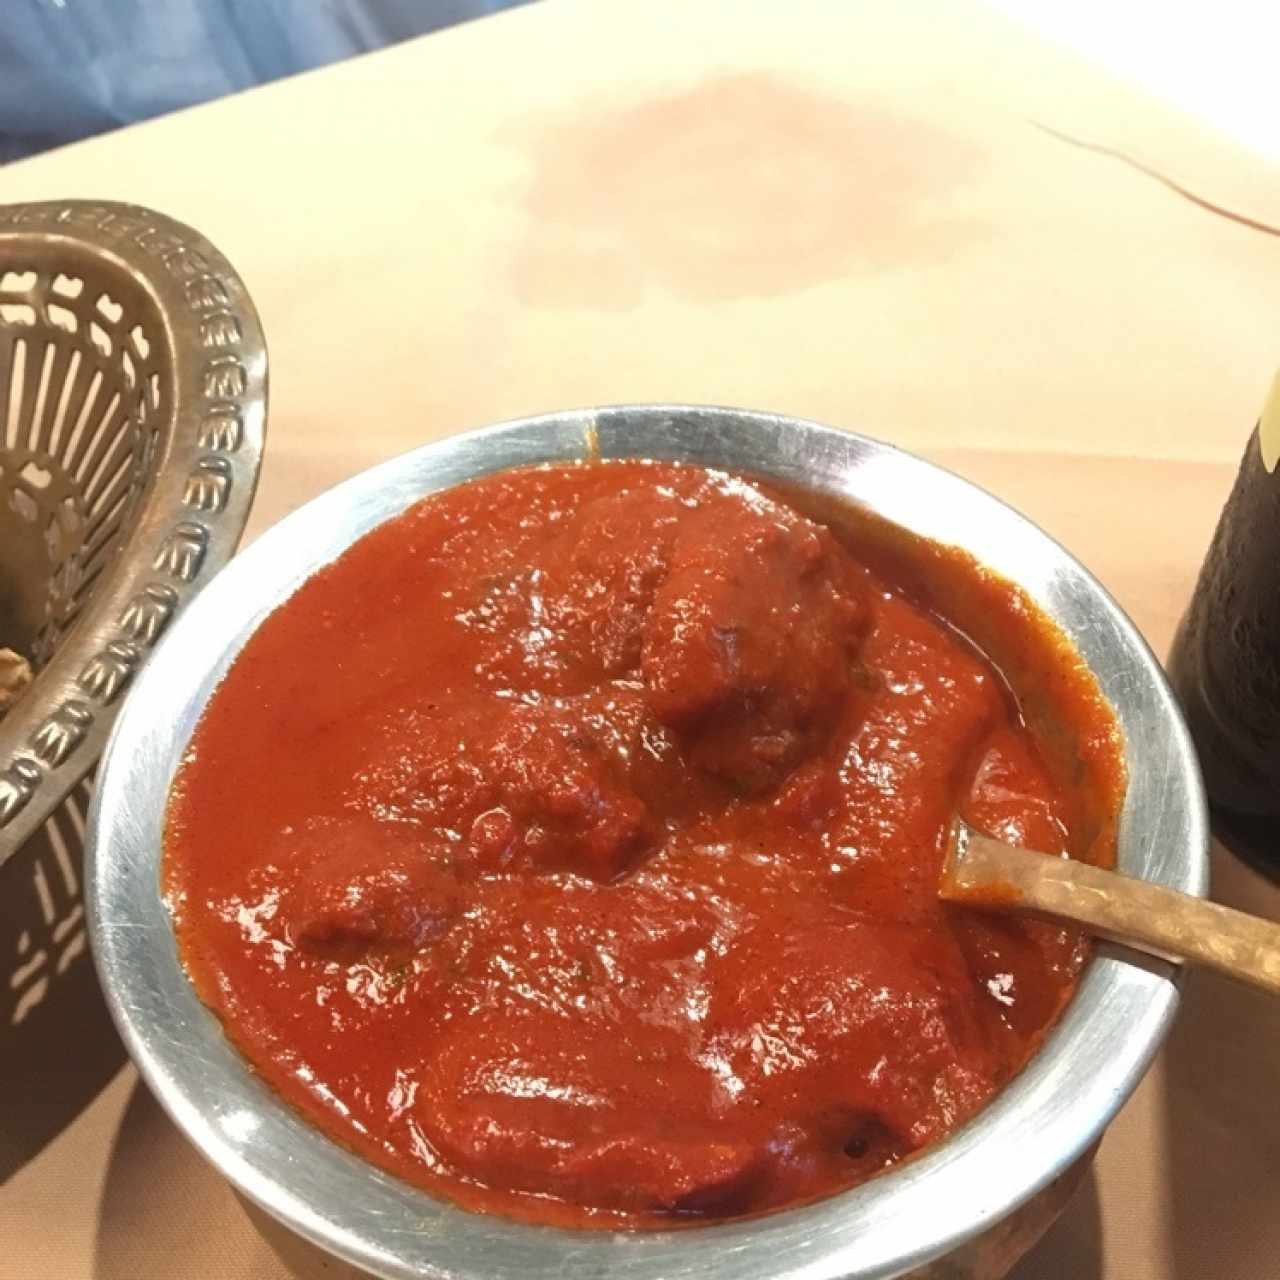 Mutton massala (curry) 🤤